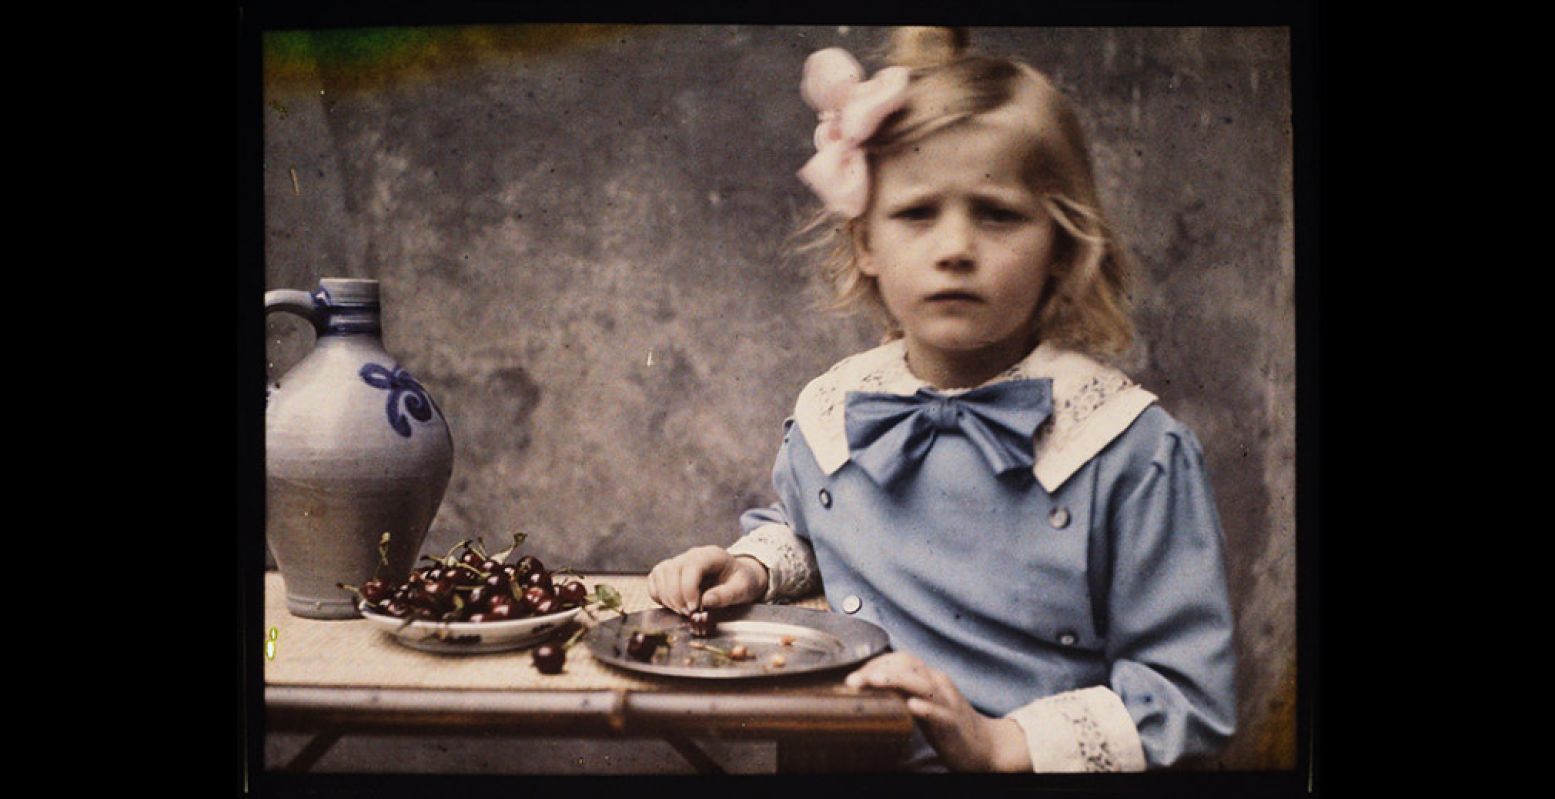 Eén van de iconische foto's in de Eregalerij: Marie Zeegers, dochter van fotograaf Jan Zeegers, circa 1912. Het is één van de eerste foto's in kleur en de eerste kleurenfoto die Zeegers maakte. Foto: Amsterdam City Archives / Jan Zeegers